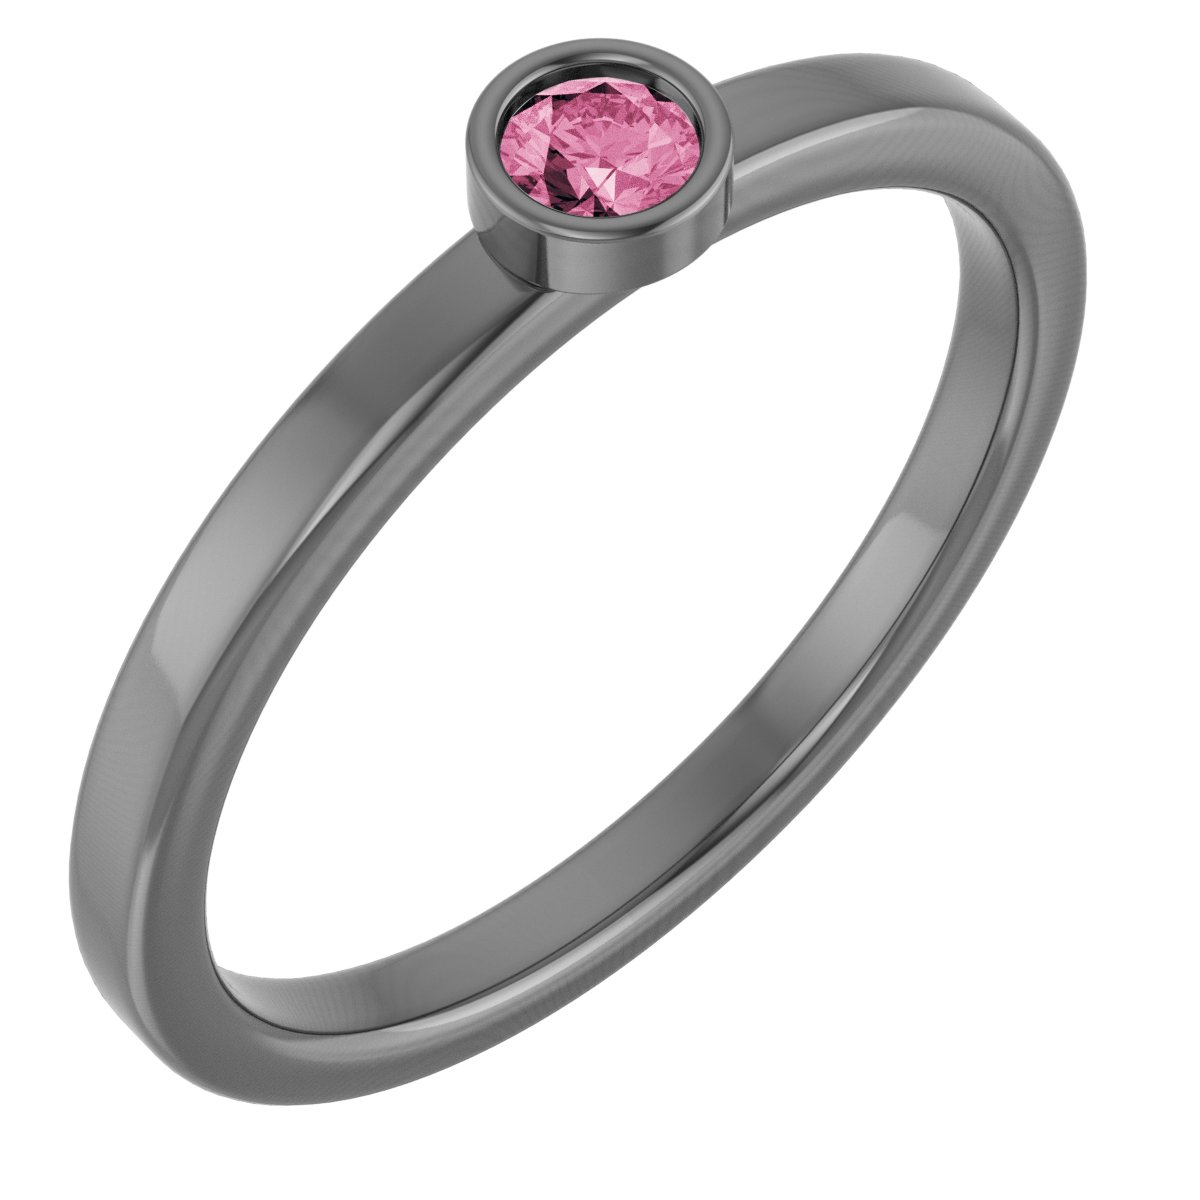 14K Yellow 3 mm Natural Pink Tourmaline Ring